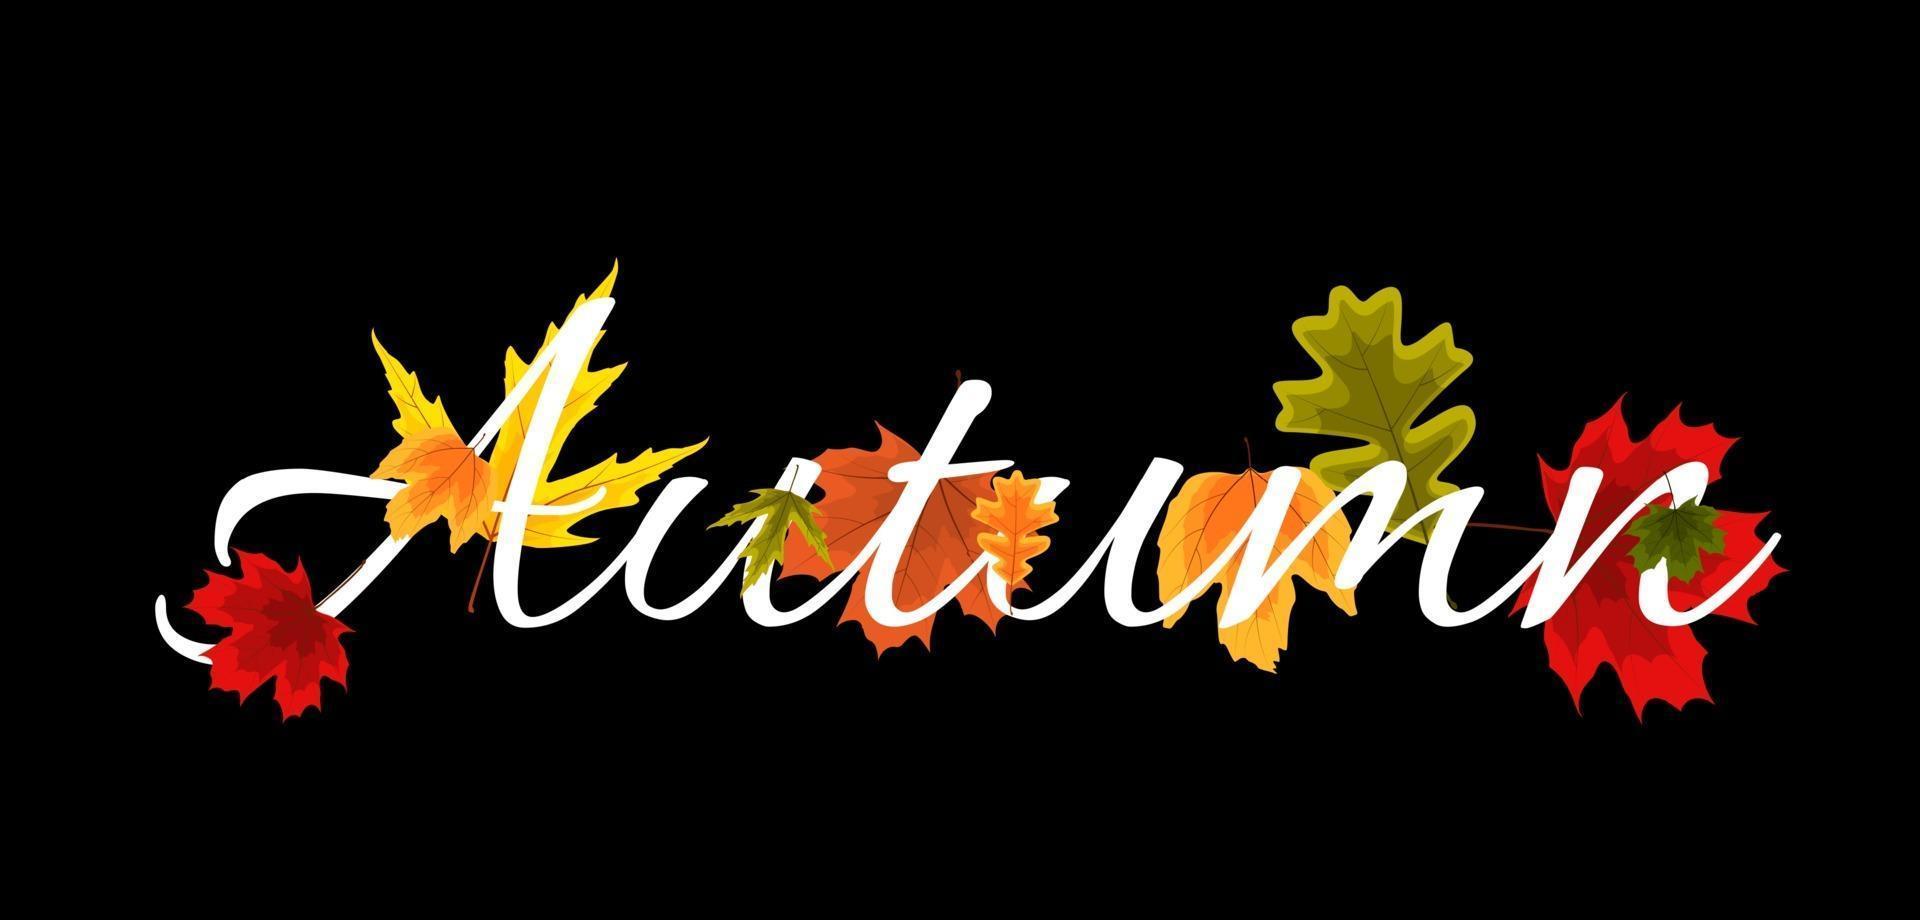 Herbst natürliche Blätter Hintergrund. Vektor-Illustration vektor